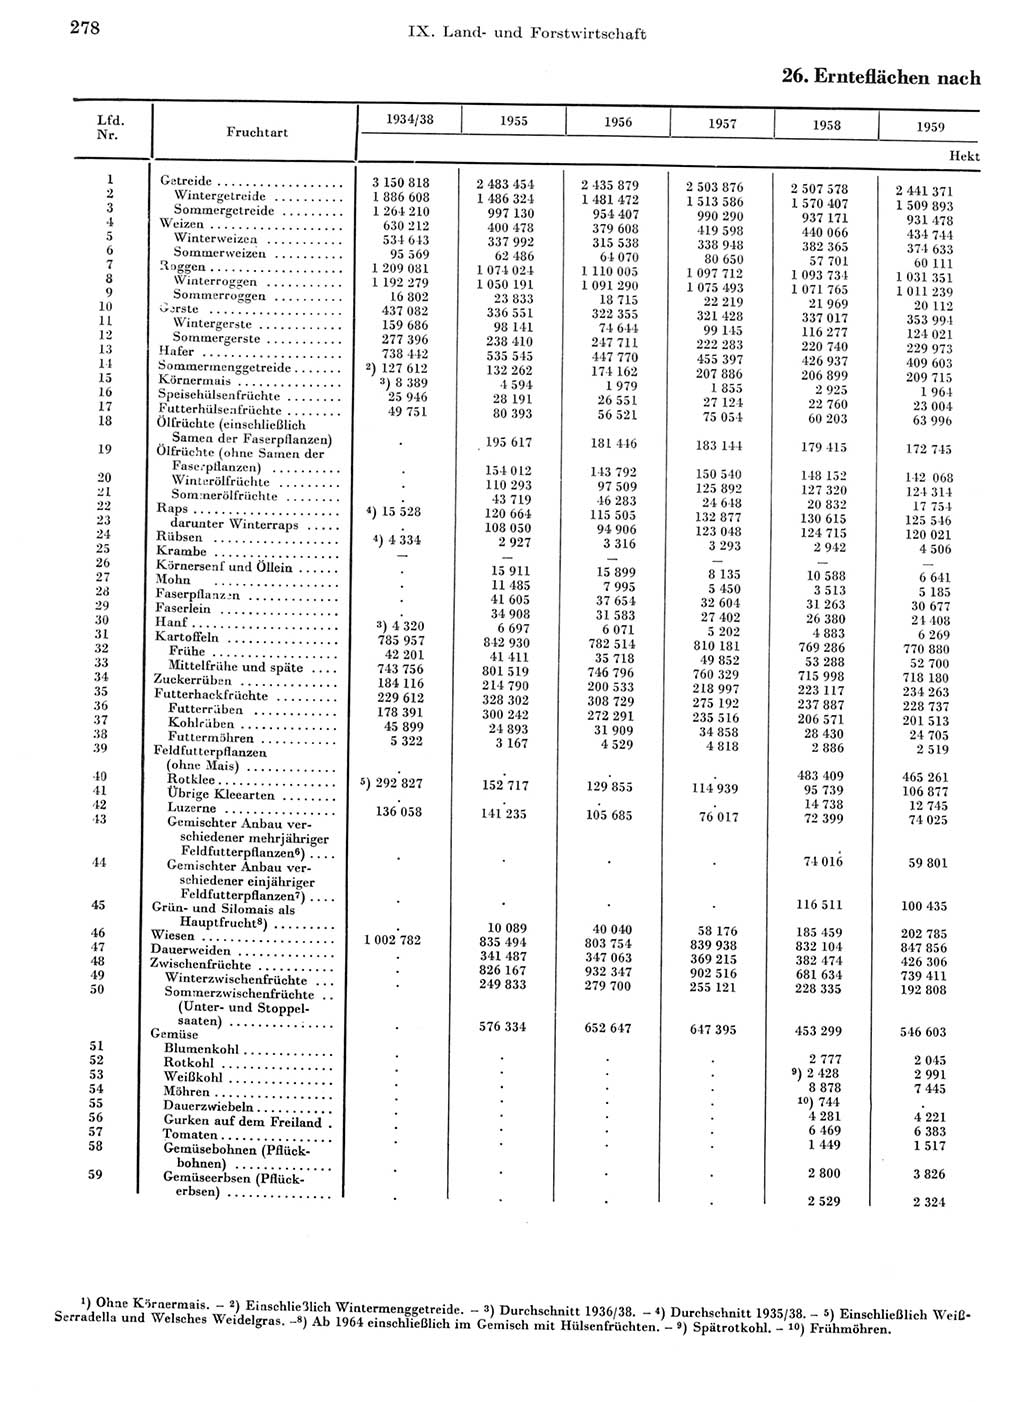 Statistisches Jahrbuch der Deutschen Demokratischen Republik (DDR) 1968, Seite 278 (Stat. Jb. DDR 1968, S. 278)